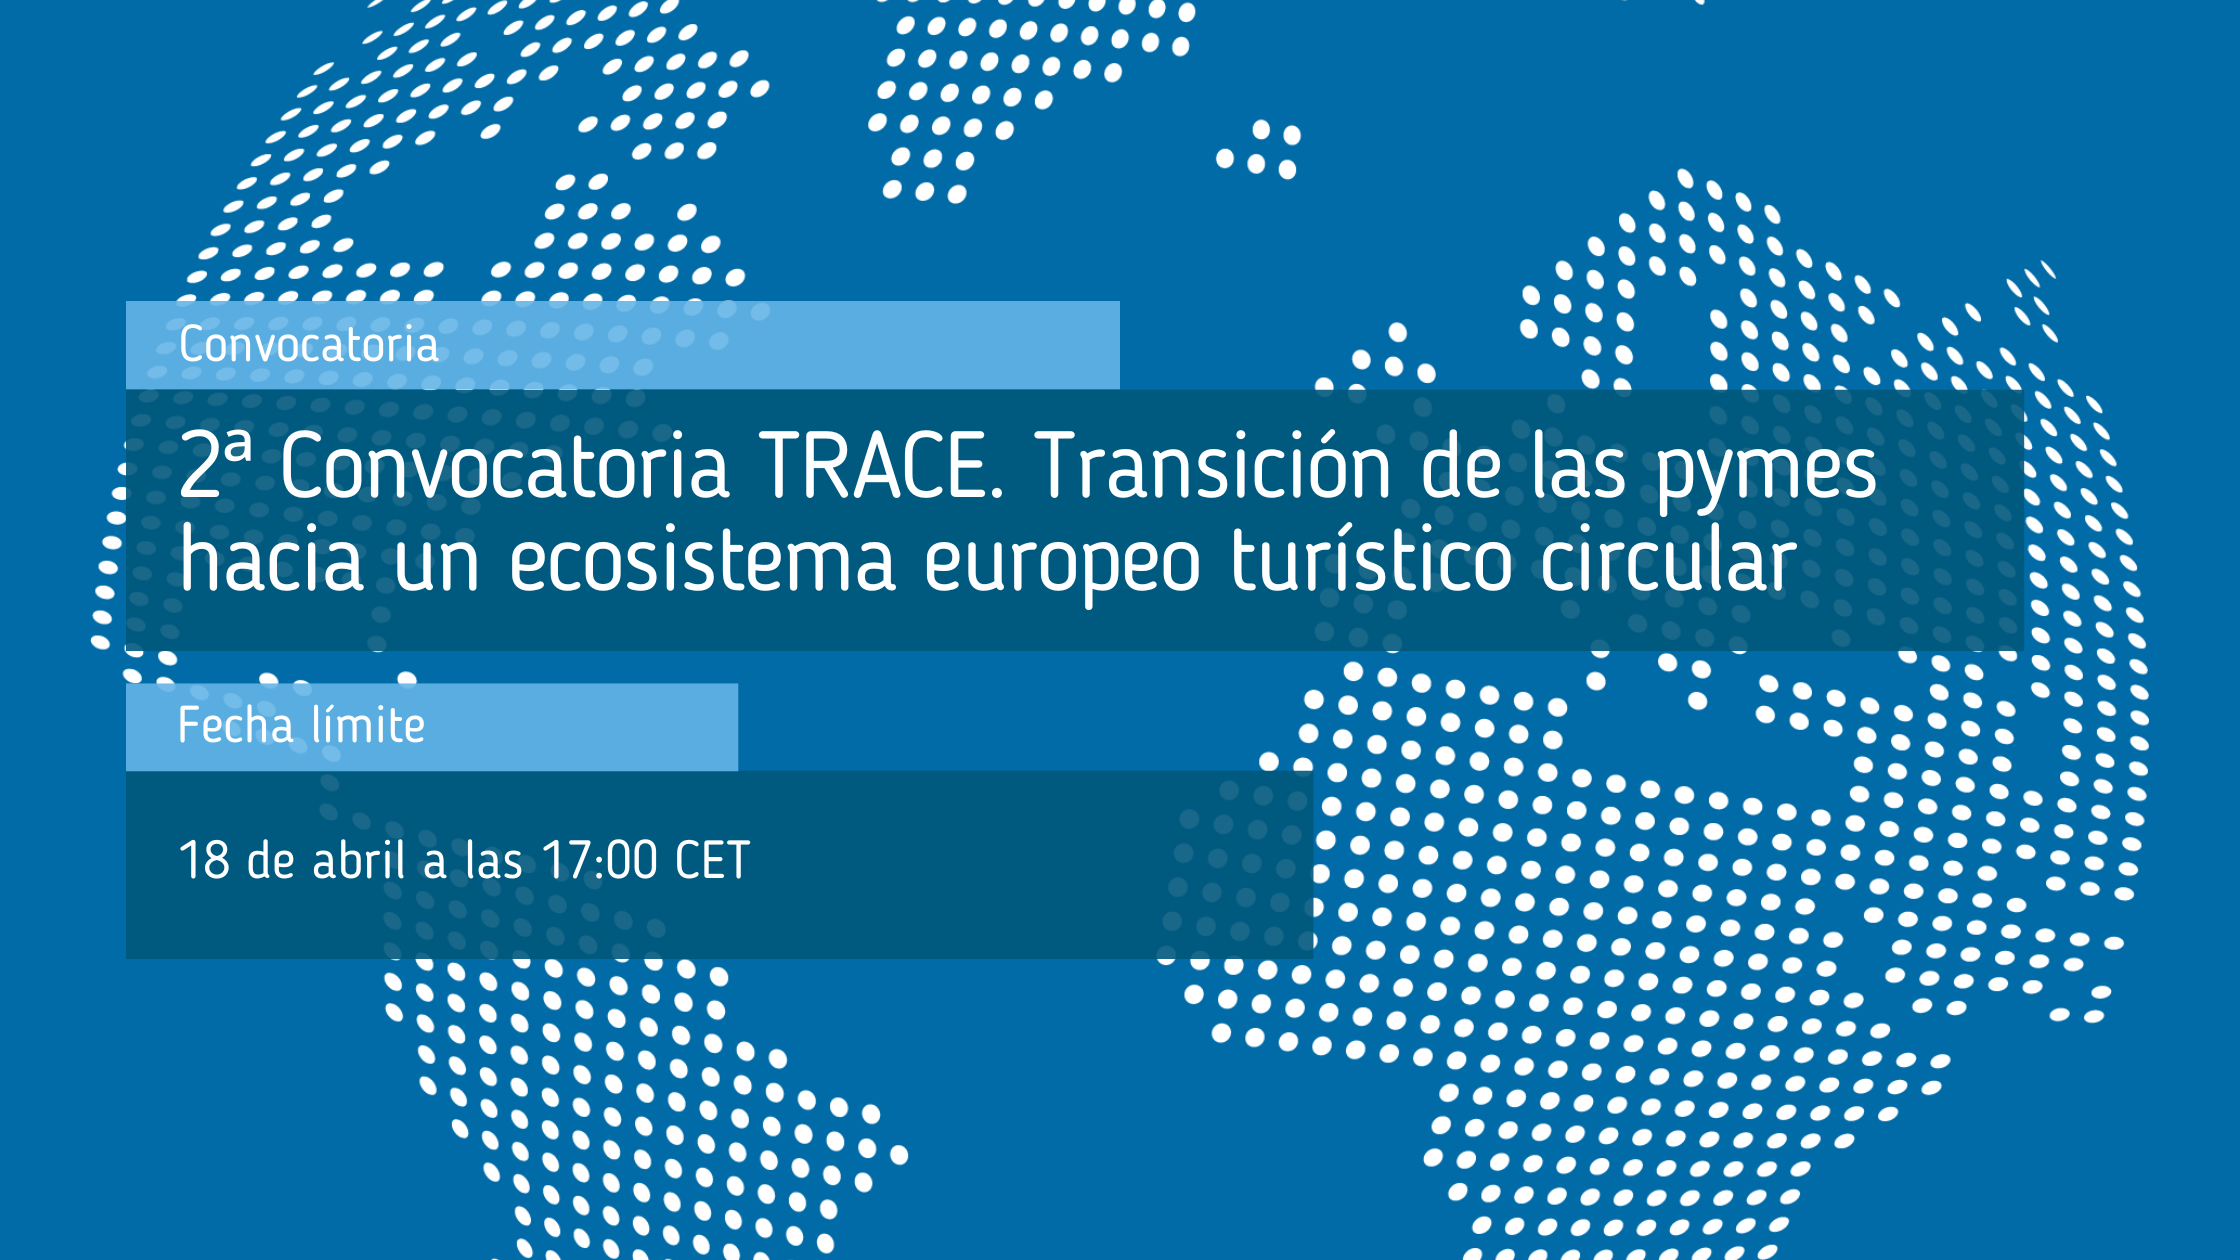 2_Convocatoria_TRACE_Transición_de_las_pymes_hacia_un_ecosistema_europeo_turístico_circular